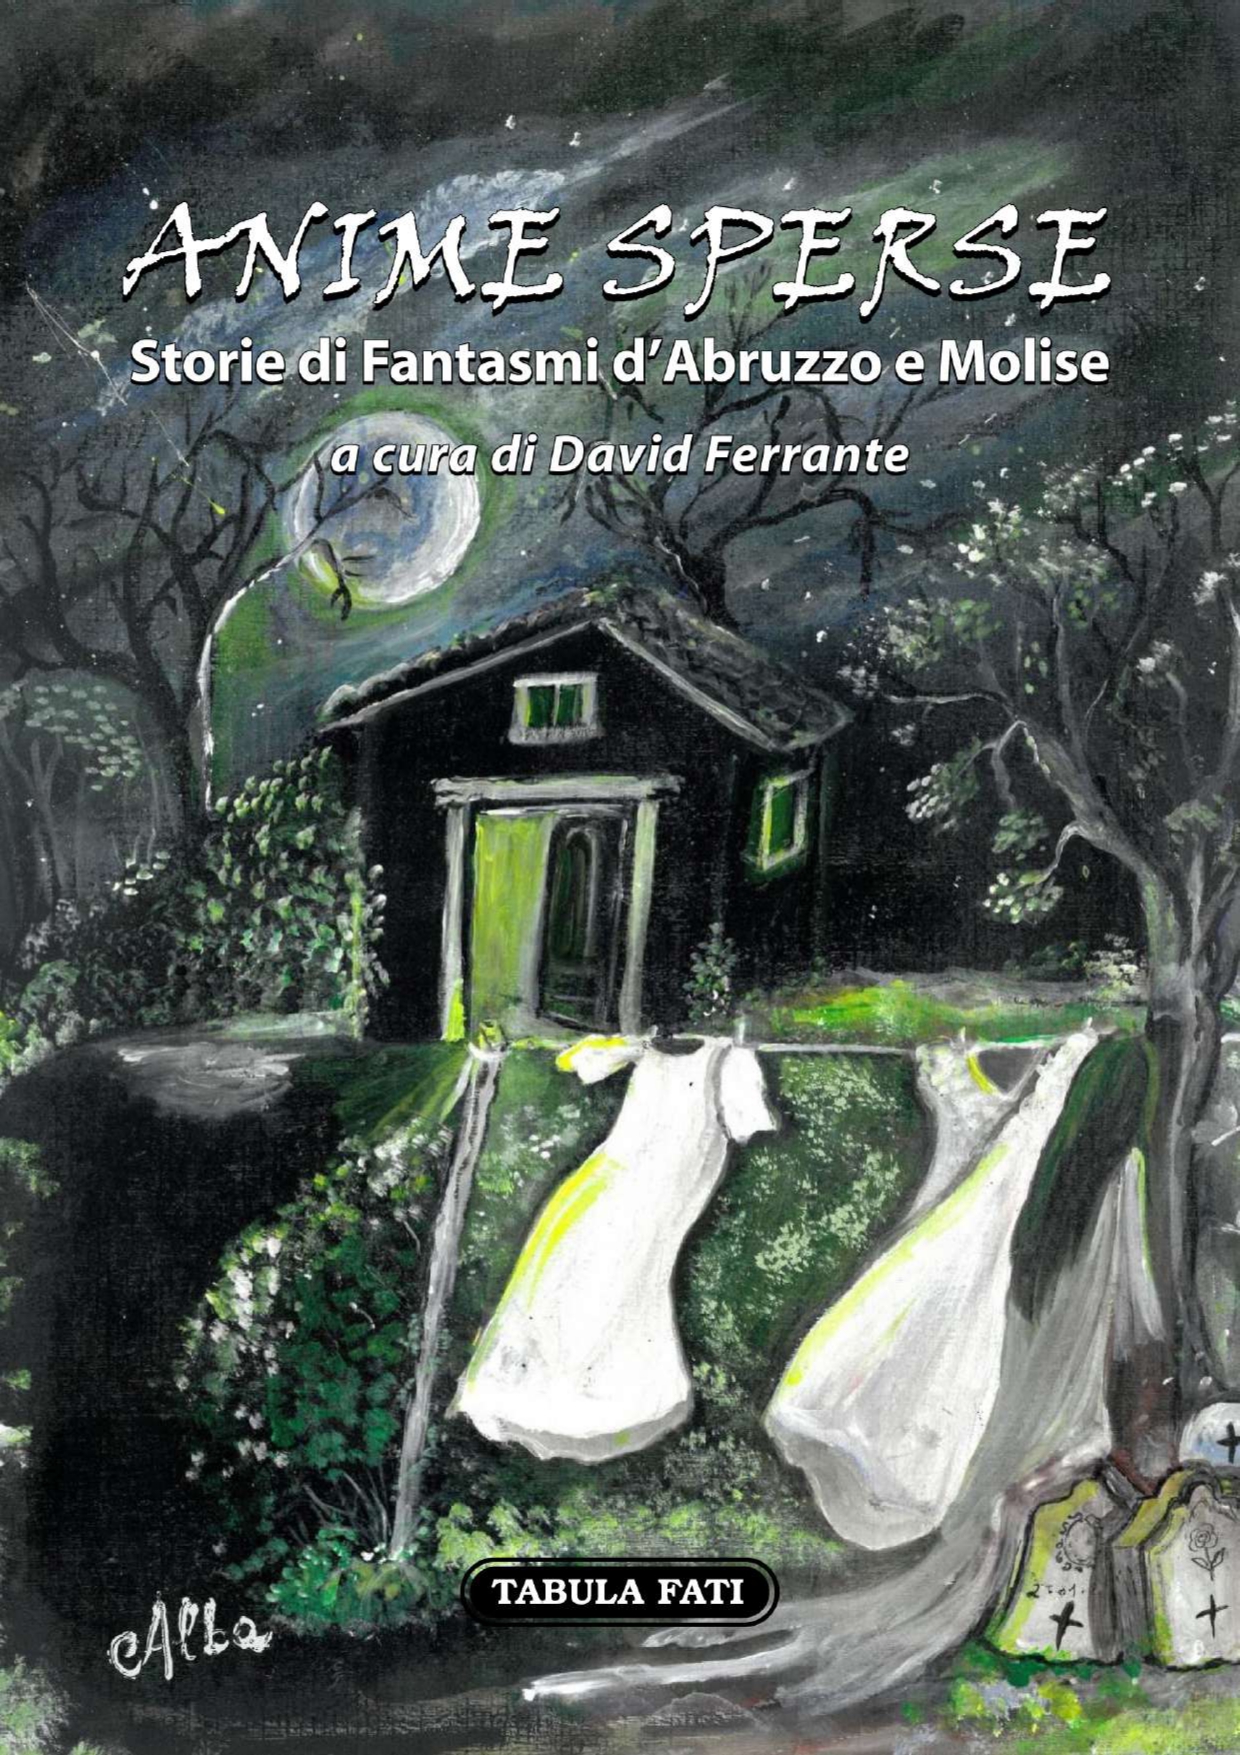 ANIME SPERSE Storie di Fantasmi d’Abruzzo e Molise